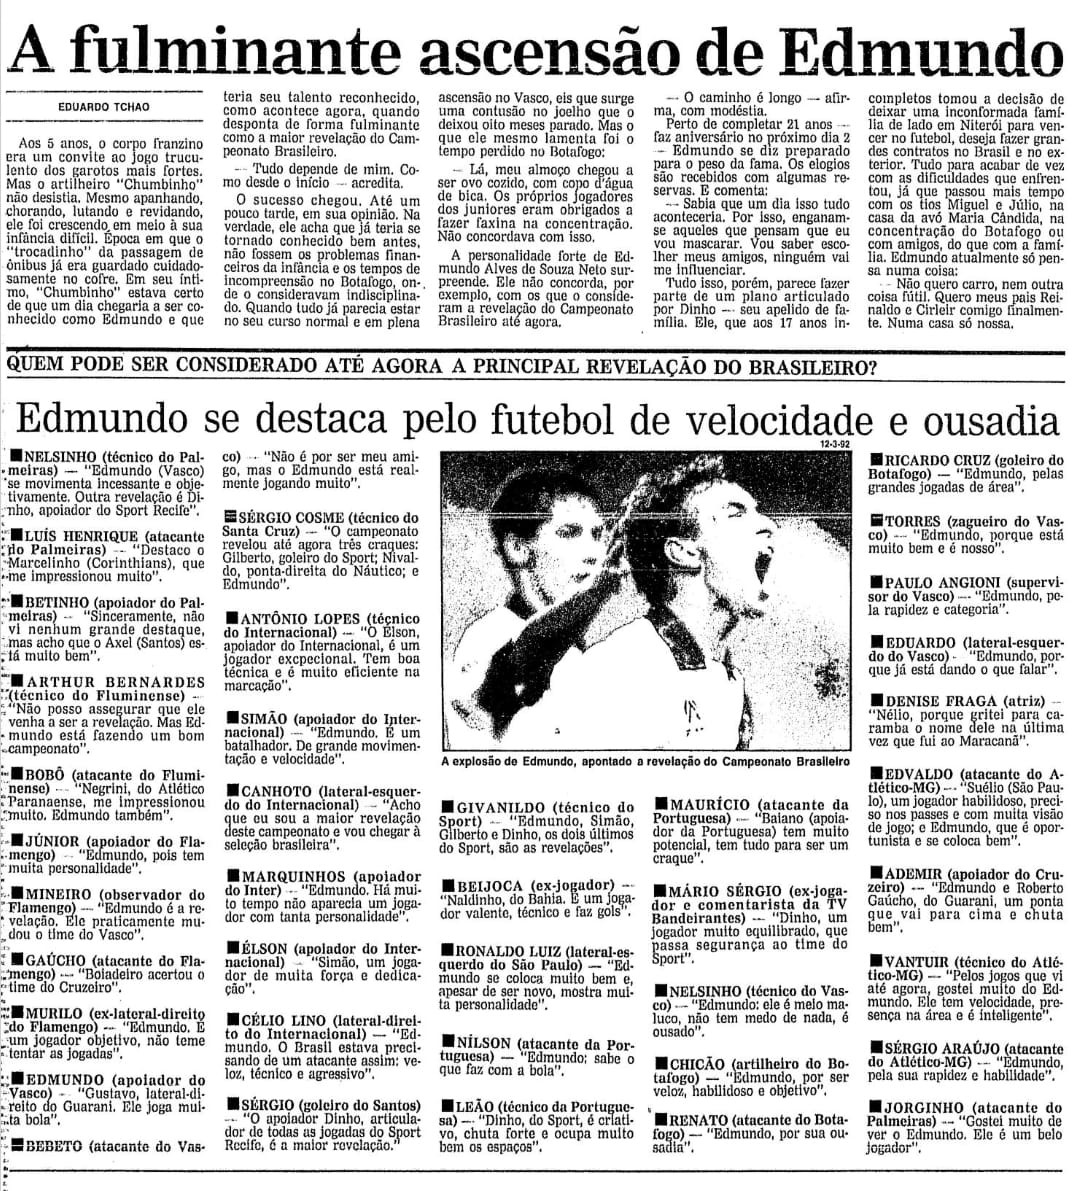 Edmundo em destaque no jornal O Globo de 1992 - reprodução/O Globo